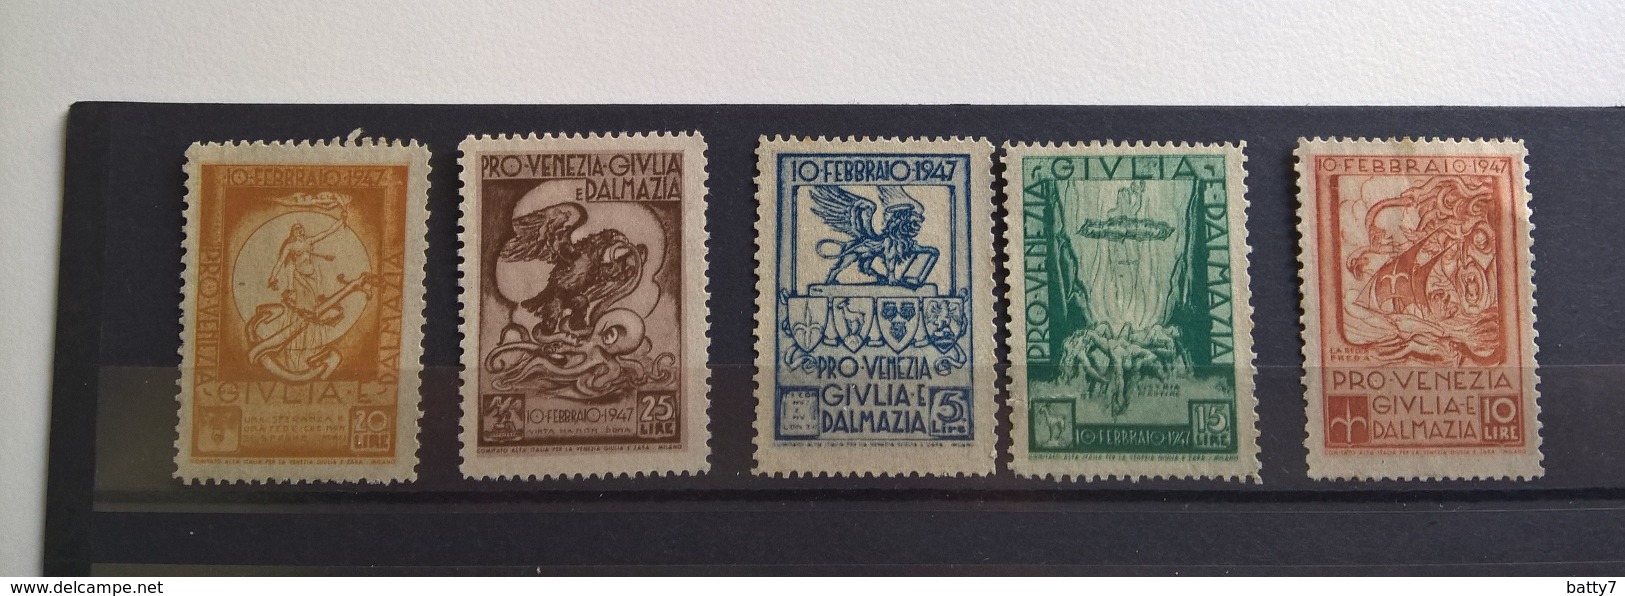 PRO VENEZIA GIULIA 1947 - Revenue Stamps